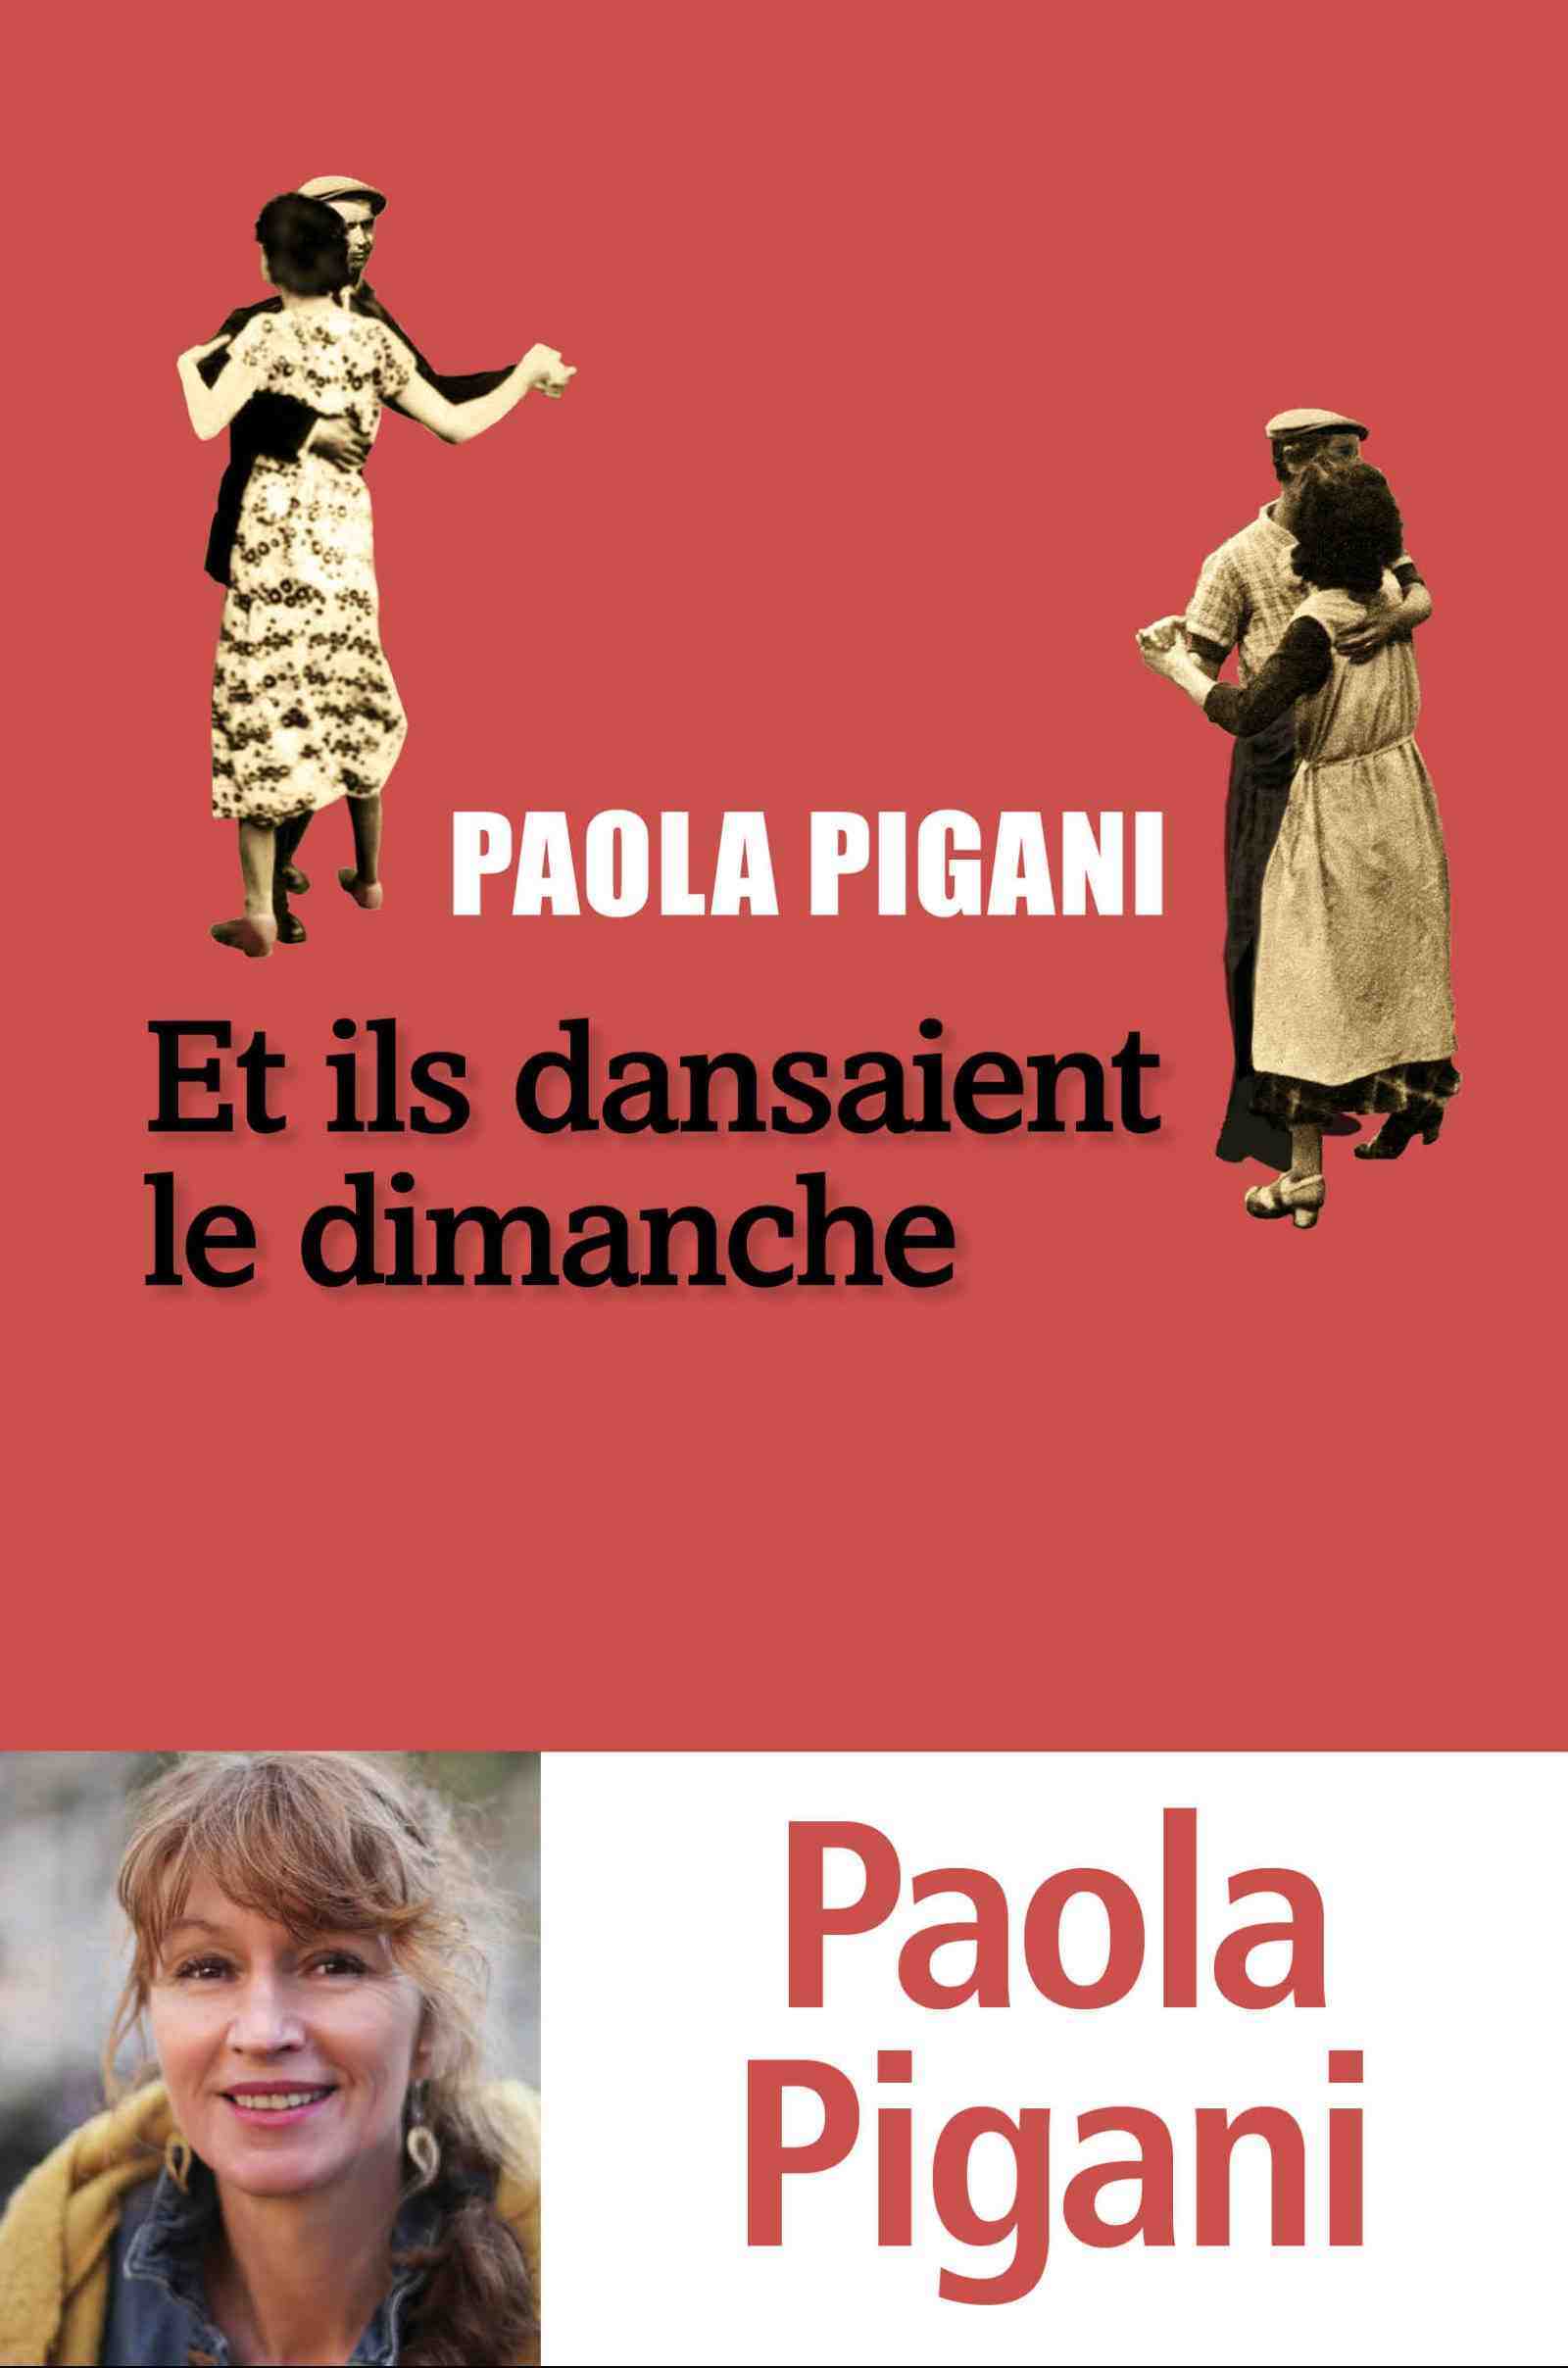 Pigani - Paola